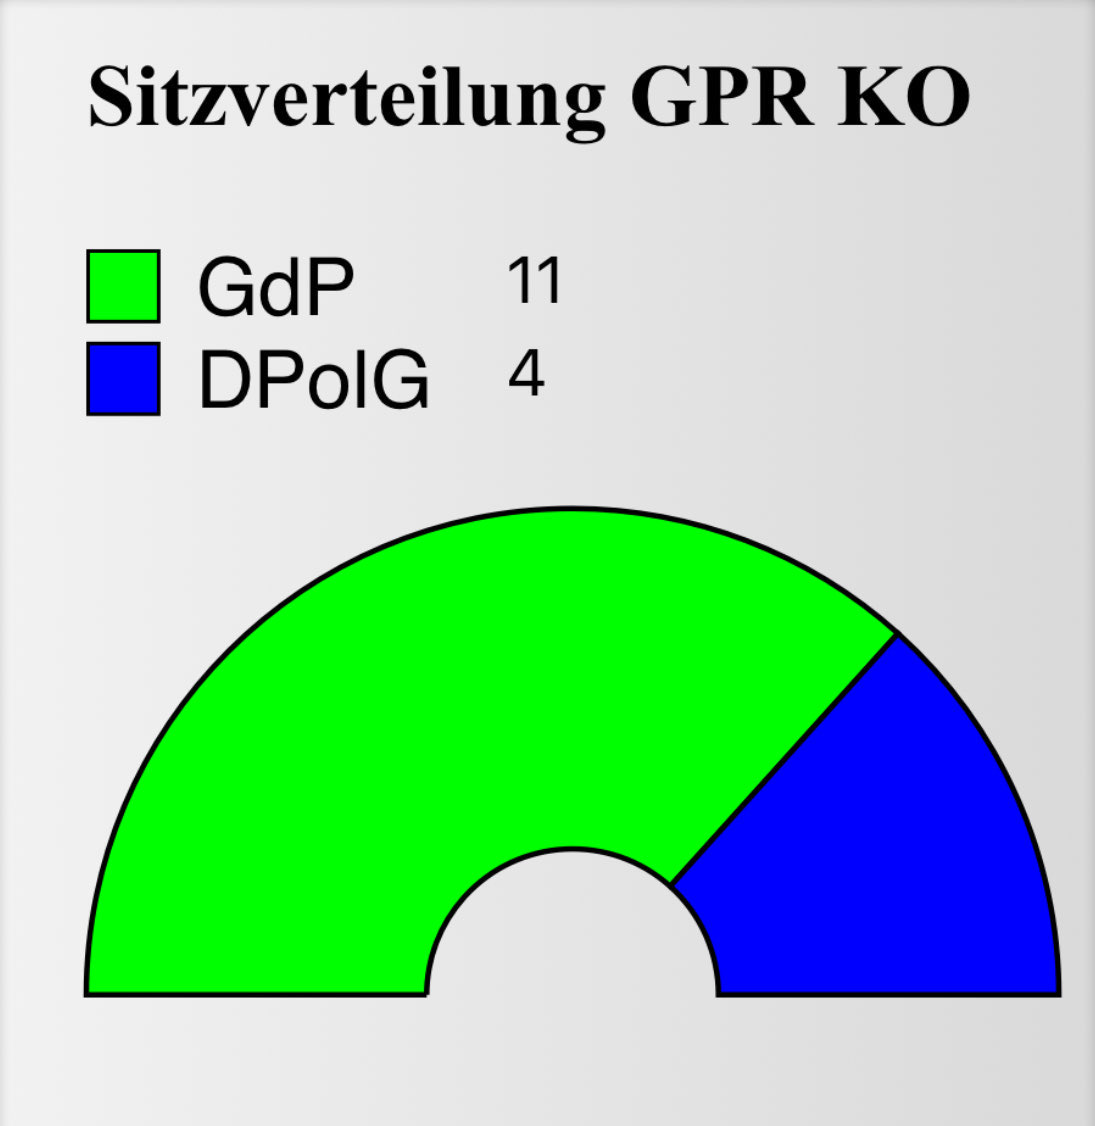 GPR BPOLD Koblenz